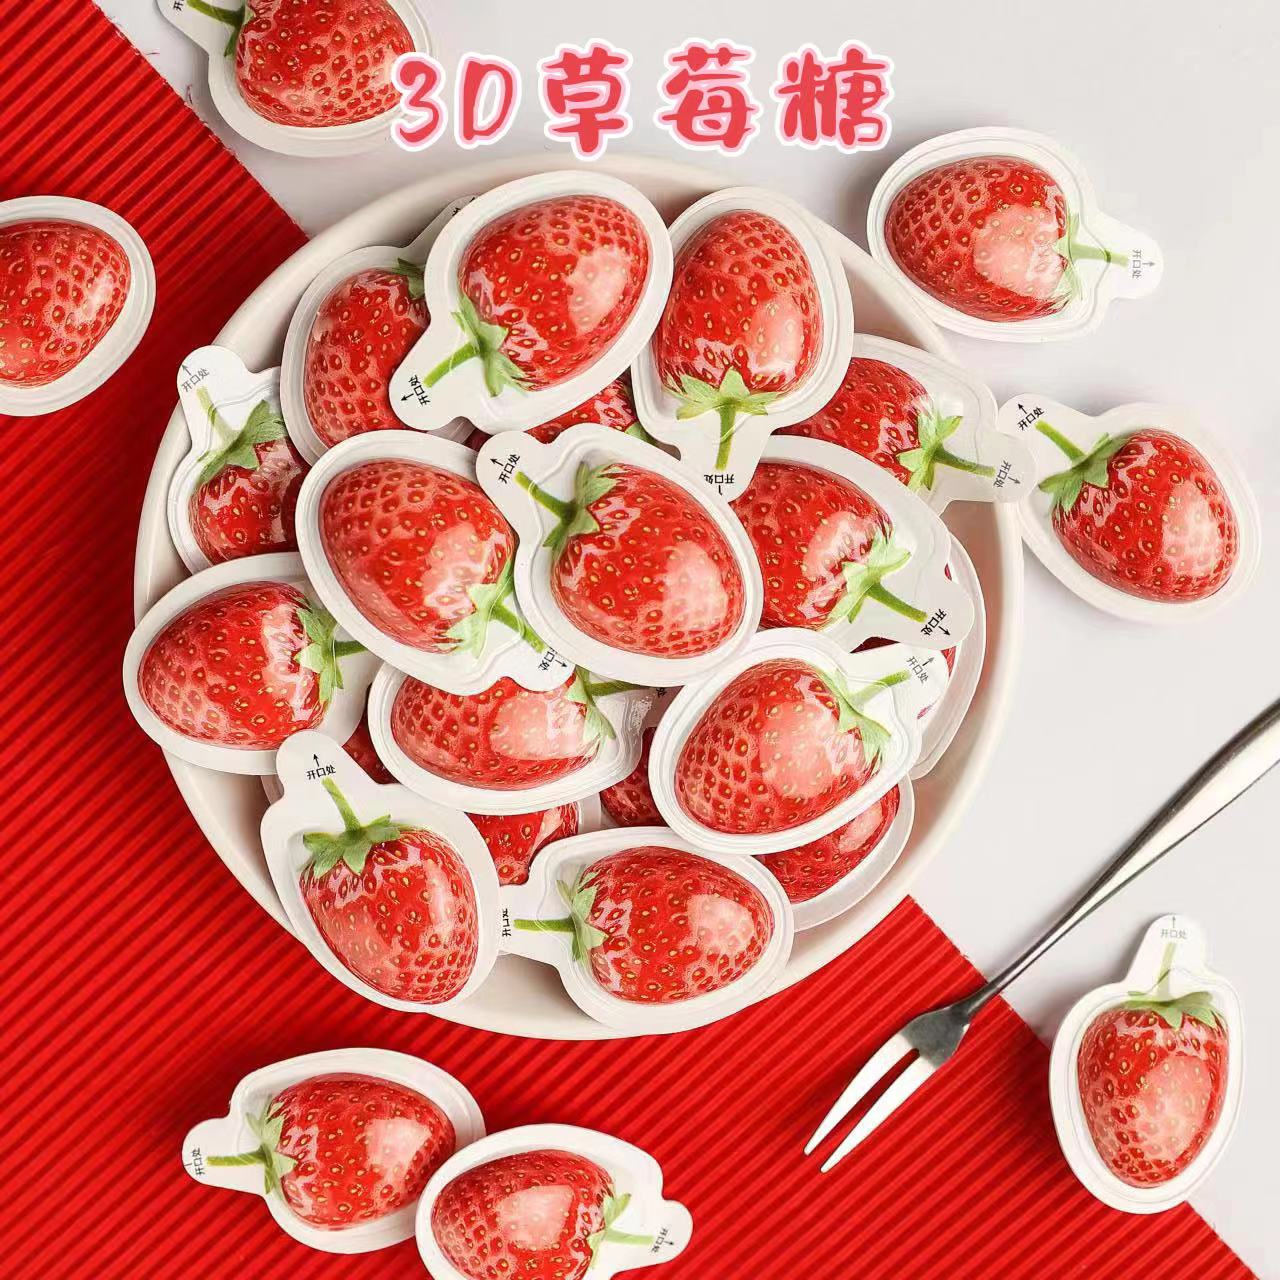 3D立体草莓糖椰子糖榴莲糖网红创意糖果特浓奶糖软糖招待儿童零食